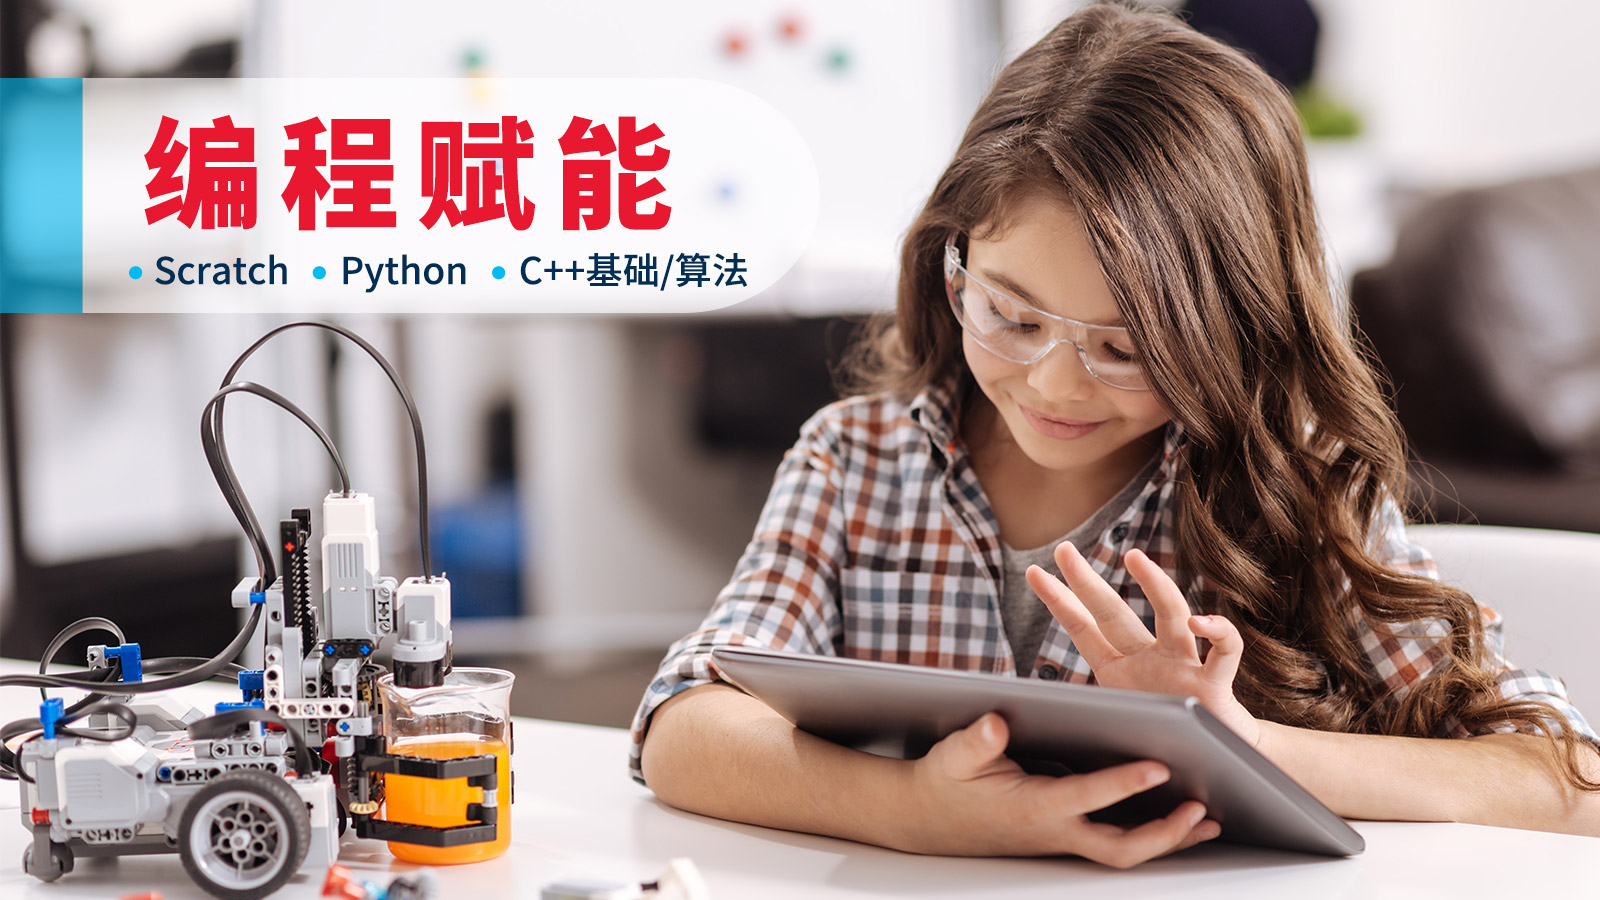 上海森孚机器人教育5-16岁儿童编程图片